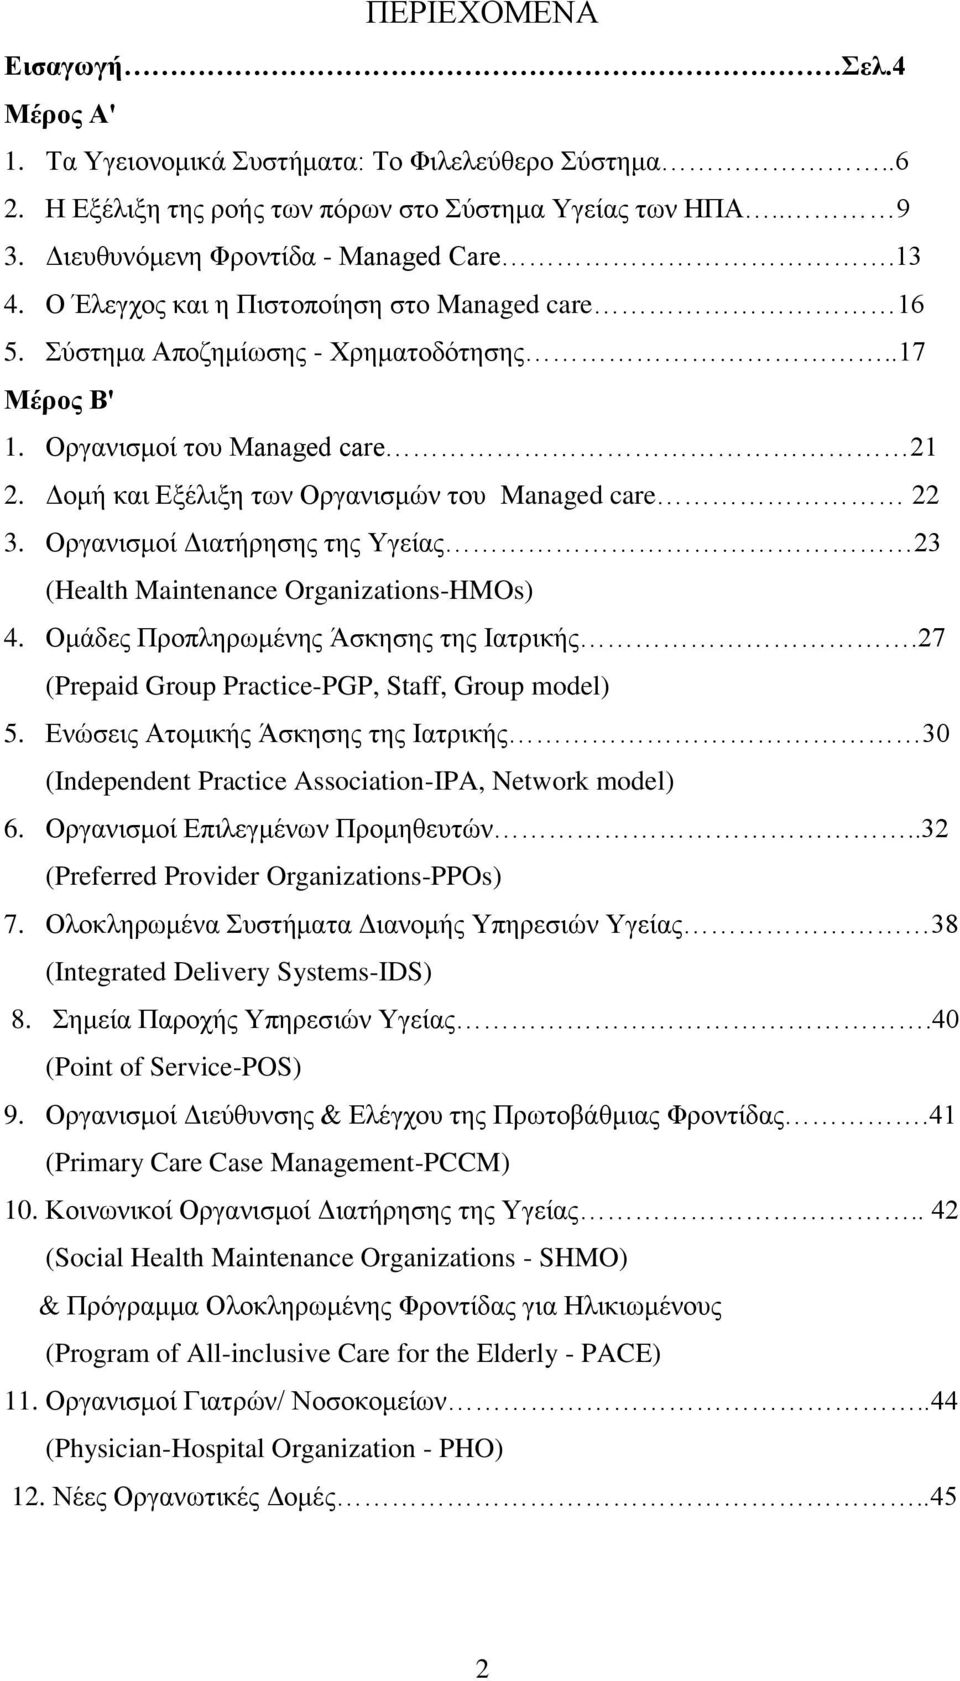 Οργανισμοί Διατήρησης της Υγείας 23 (Health Maintenance Organizations-HMOs) 4. Ομάδες Προπληρωμένης Άσκησης της Ιατρικής.27 (Prepaid Group Practice-PGP, Staff, Group model) 5.